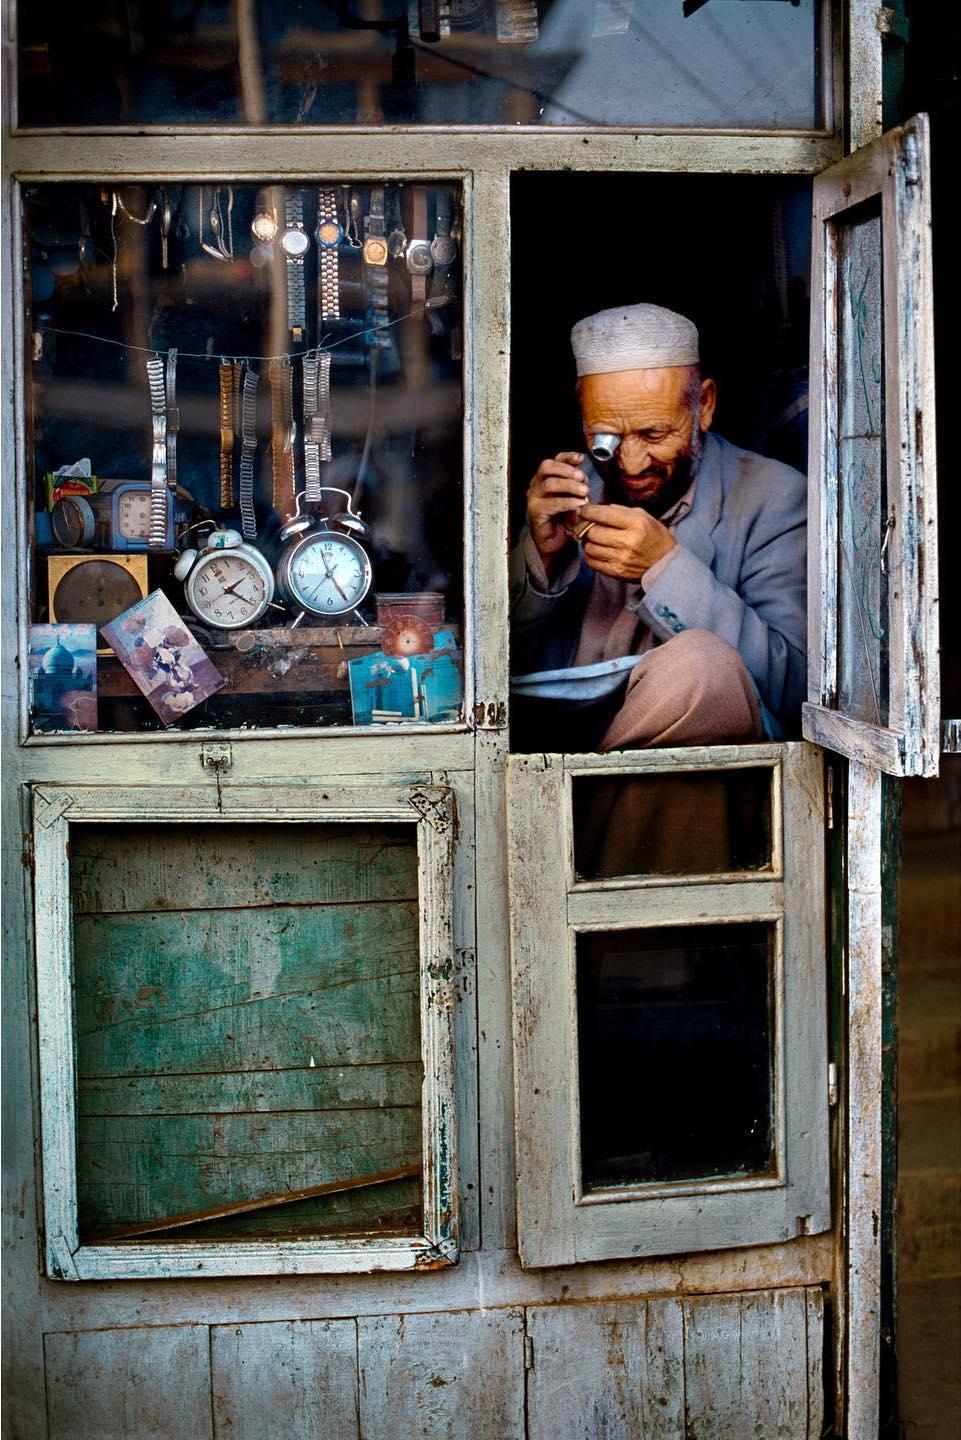  街头的钟表匠，Steve McCurry摄于2002年阿富汗。 